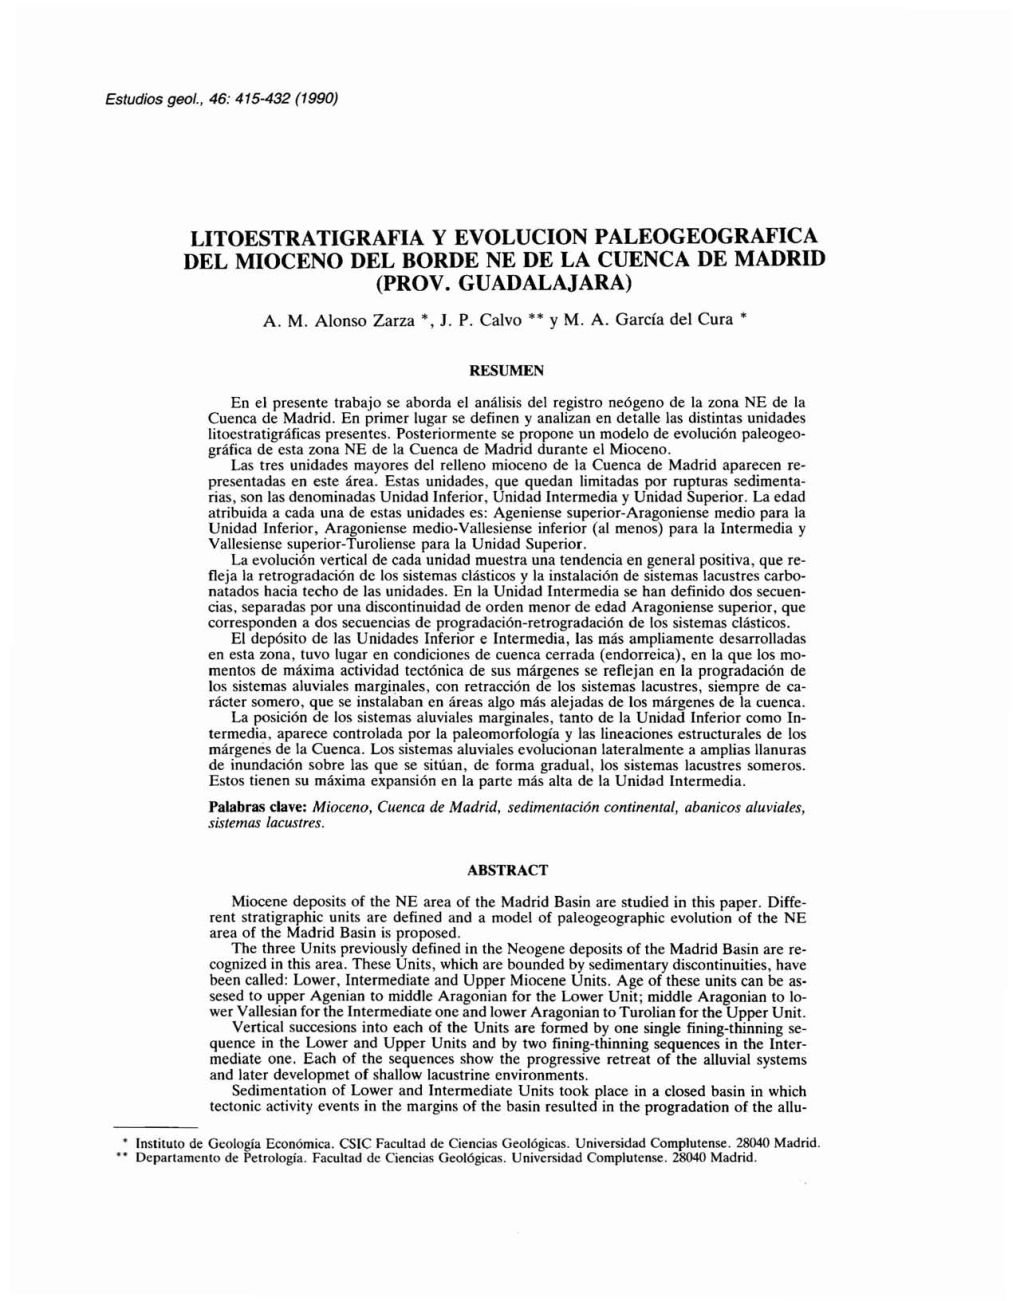 LITOESTRATIGRAFIA Y EVOLUCION PALEOGEOGRAFICA DEL MIOCENO DEL BORDE NE DE LA CUENCA DE MADRID (PROV